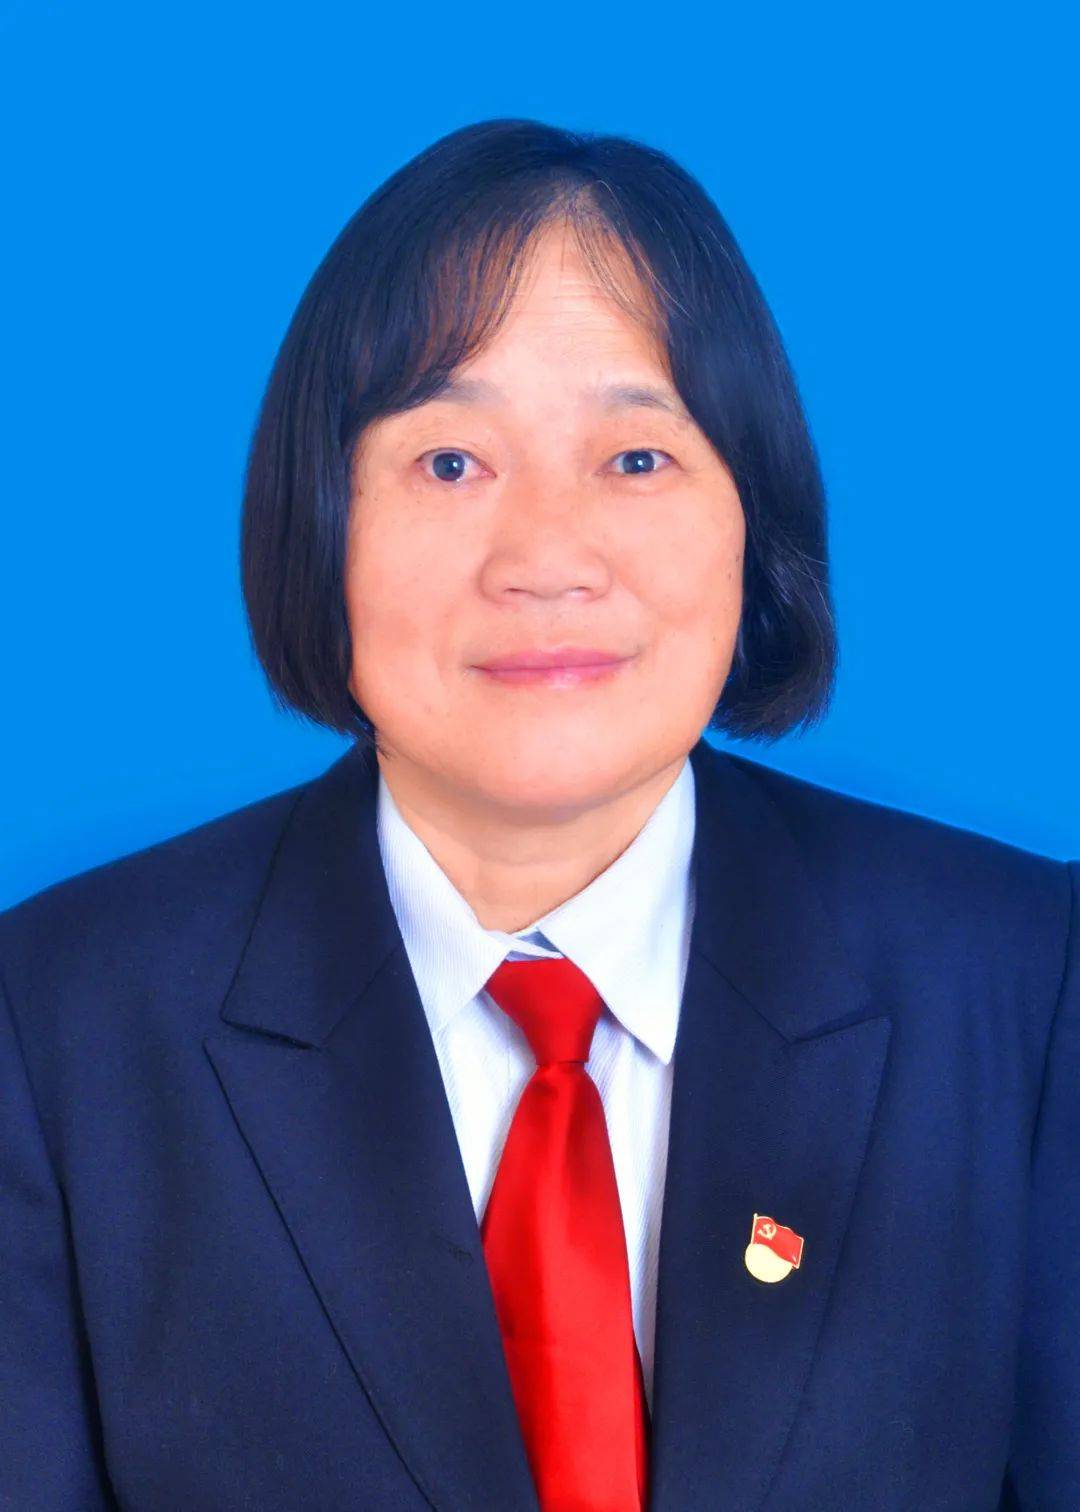 【人物简介】续辉,女,1963年7月出生,湖北省通城县司法局法律援助中心